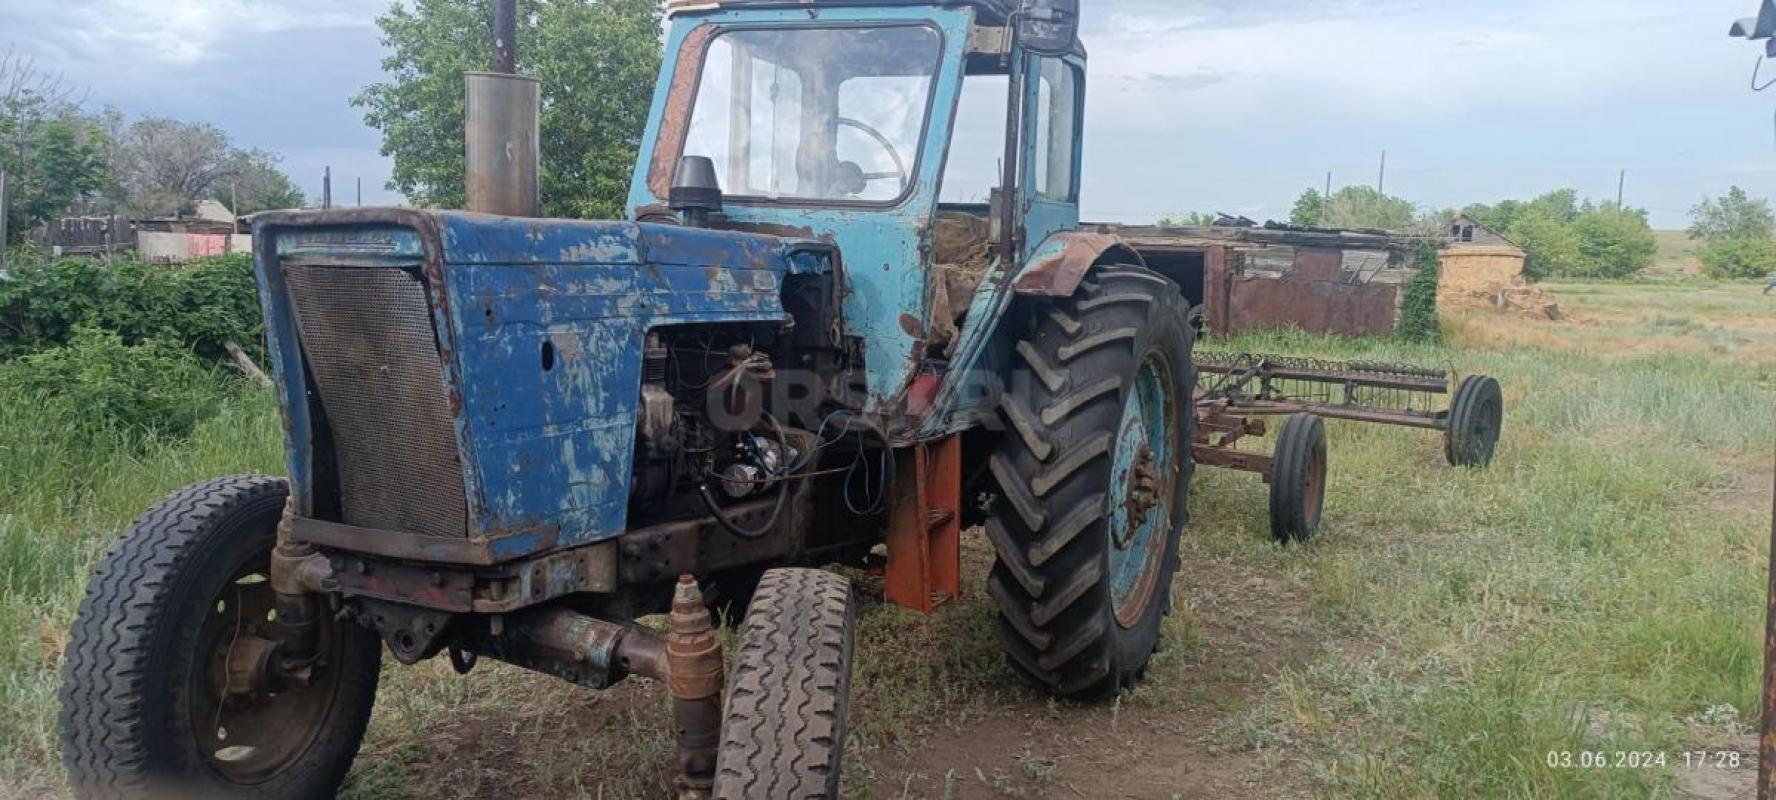 Трактор МТЗ на полном ходу с косилкой и граблями, находится в ясненьском районе, село каракуль - Орск